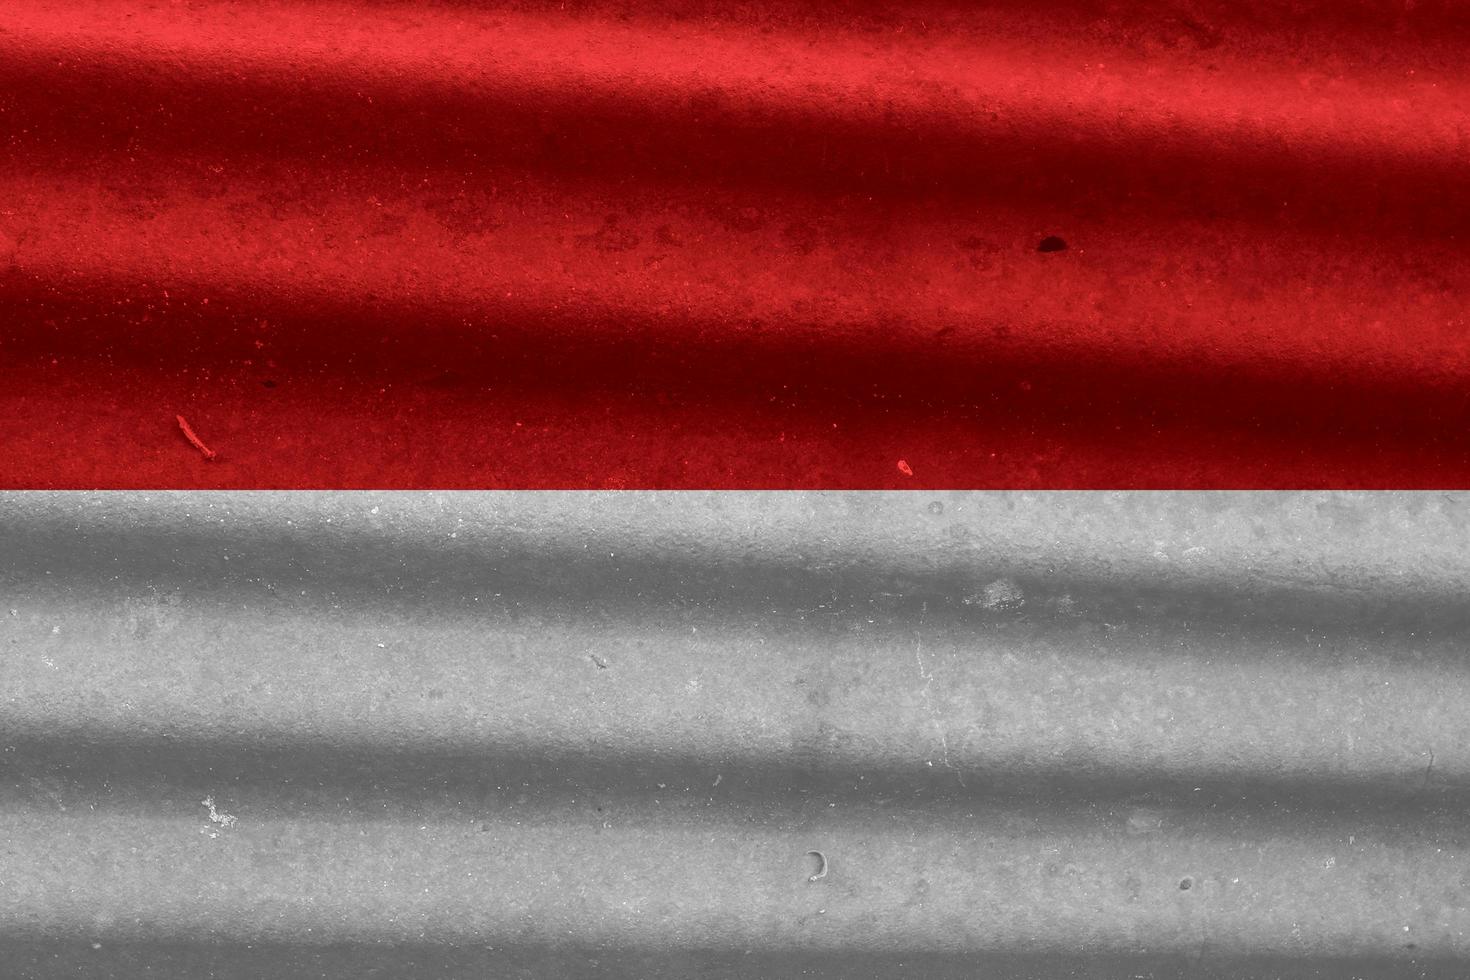 Indonesisch vlag structuur net zo een achtergrond foto